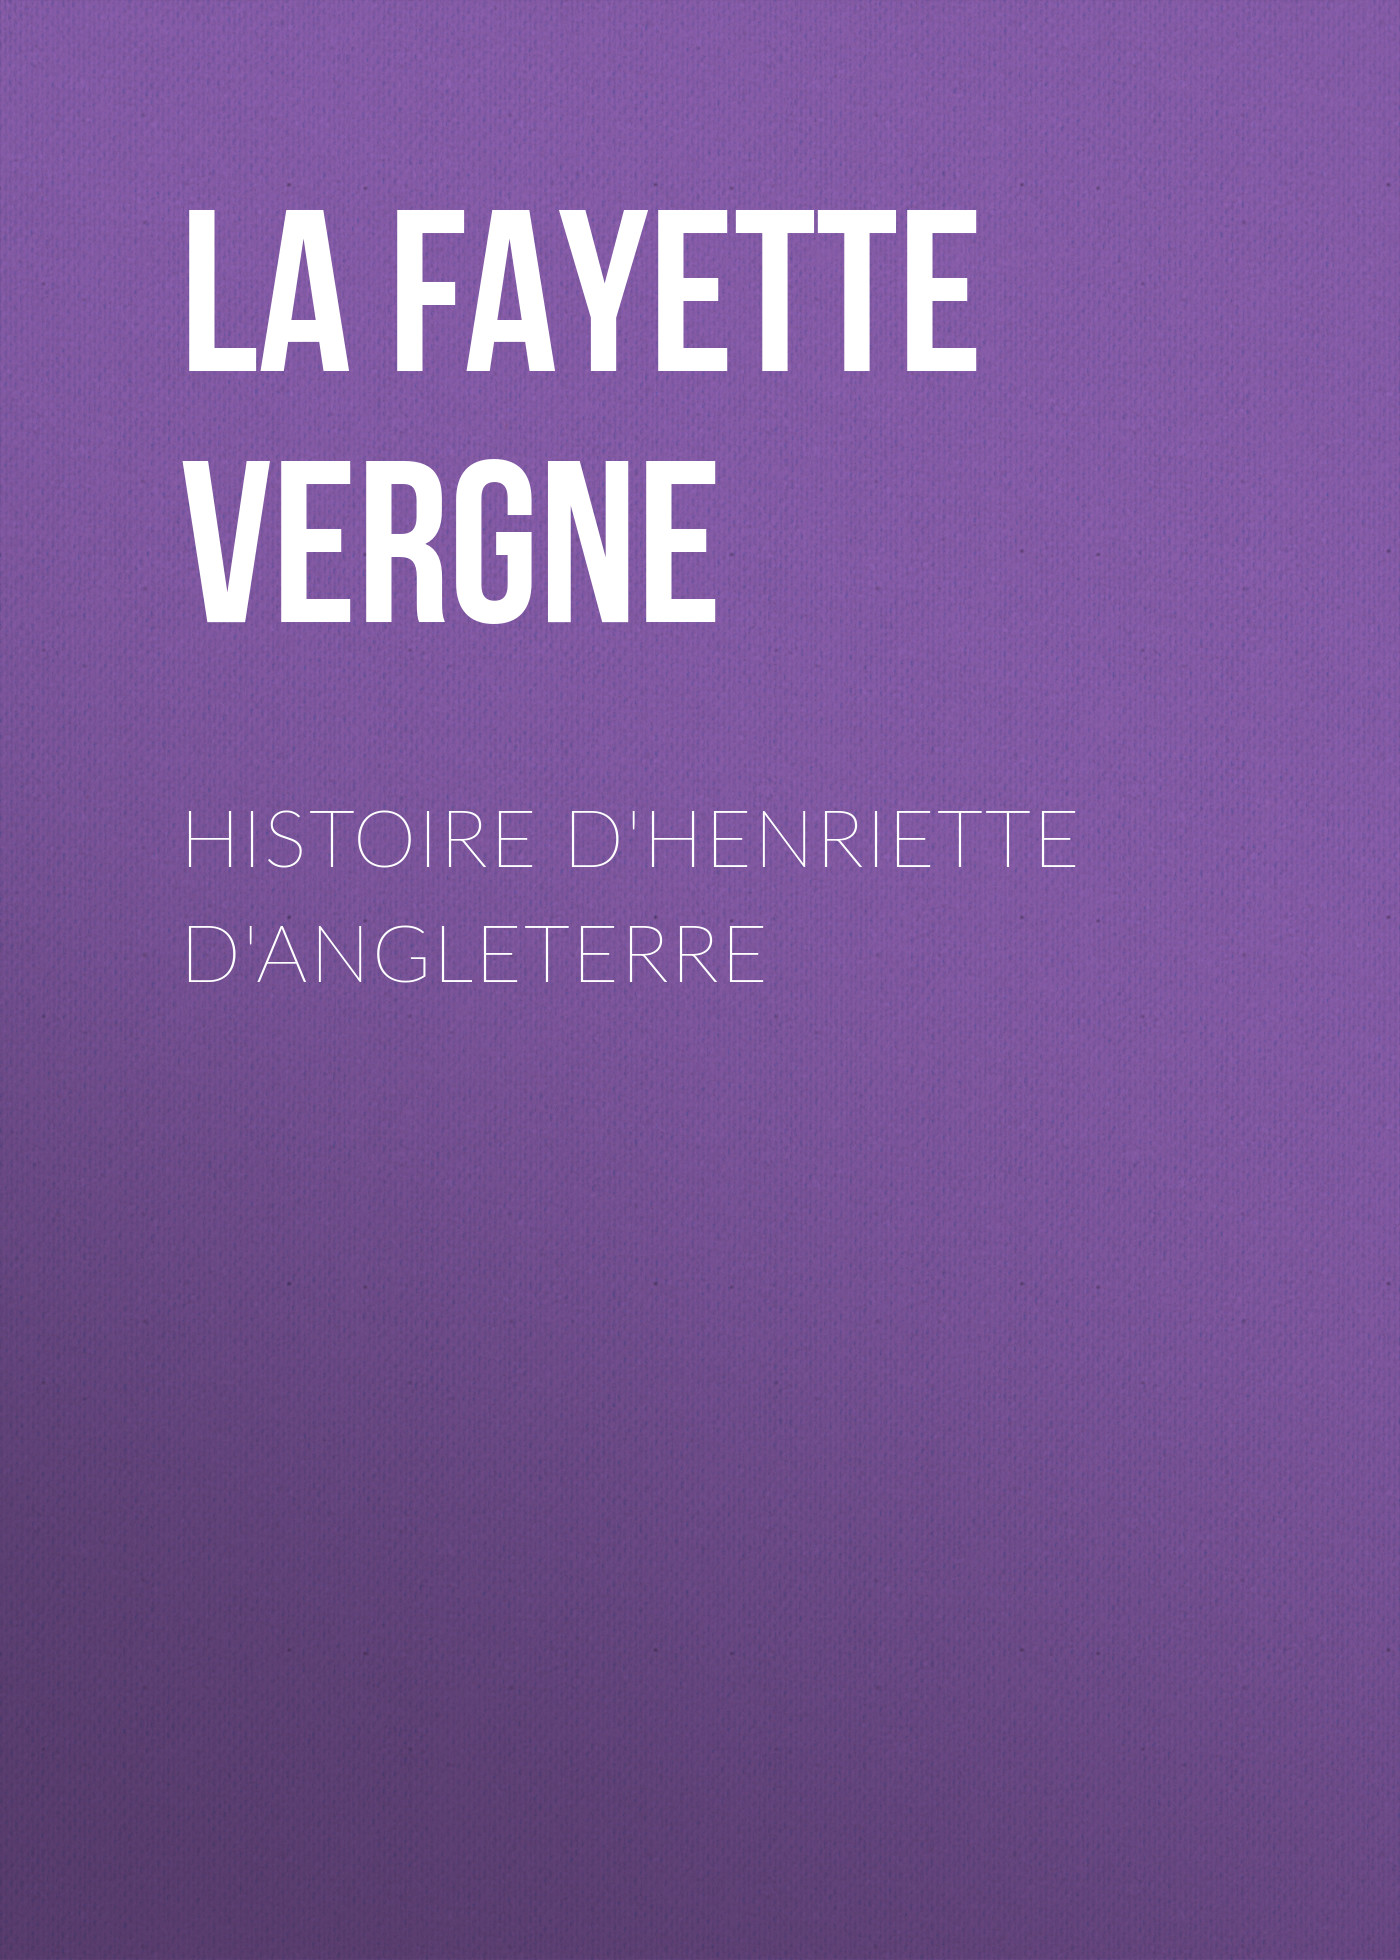 Книга Histoire d'Henriette d'Angleterre из серии , созданная Marie-Madeleine La Fayette, может относится к жанру Зарубежная старинная литература, Зарубежная классика. Стоимость электронной книги Histoire d'Henriette d'Angleterre с идентификатором 24728849 составляет 0 руб.